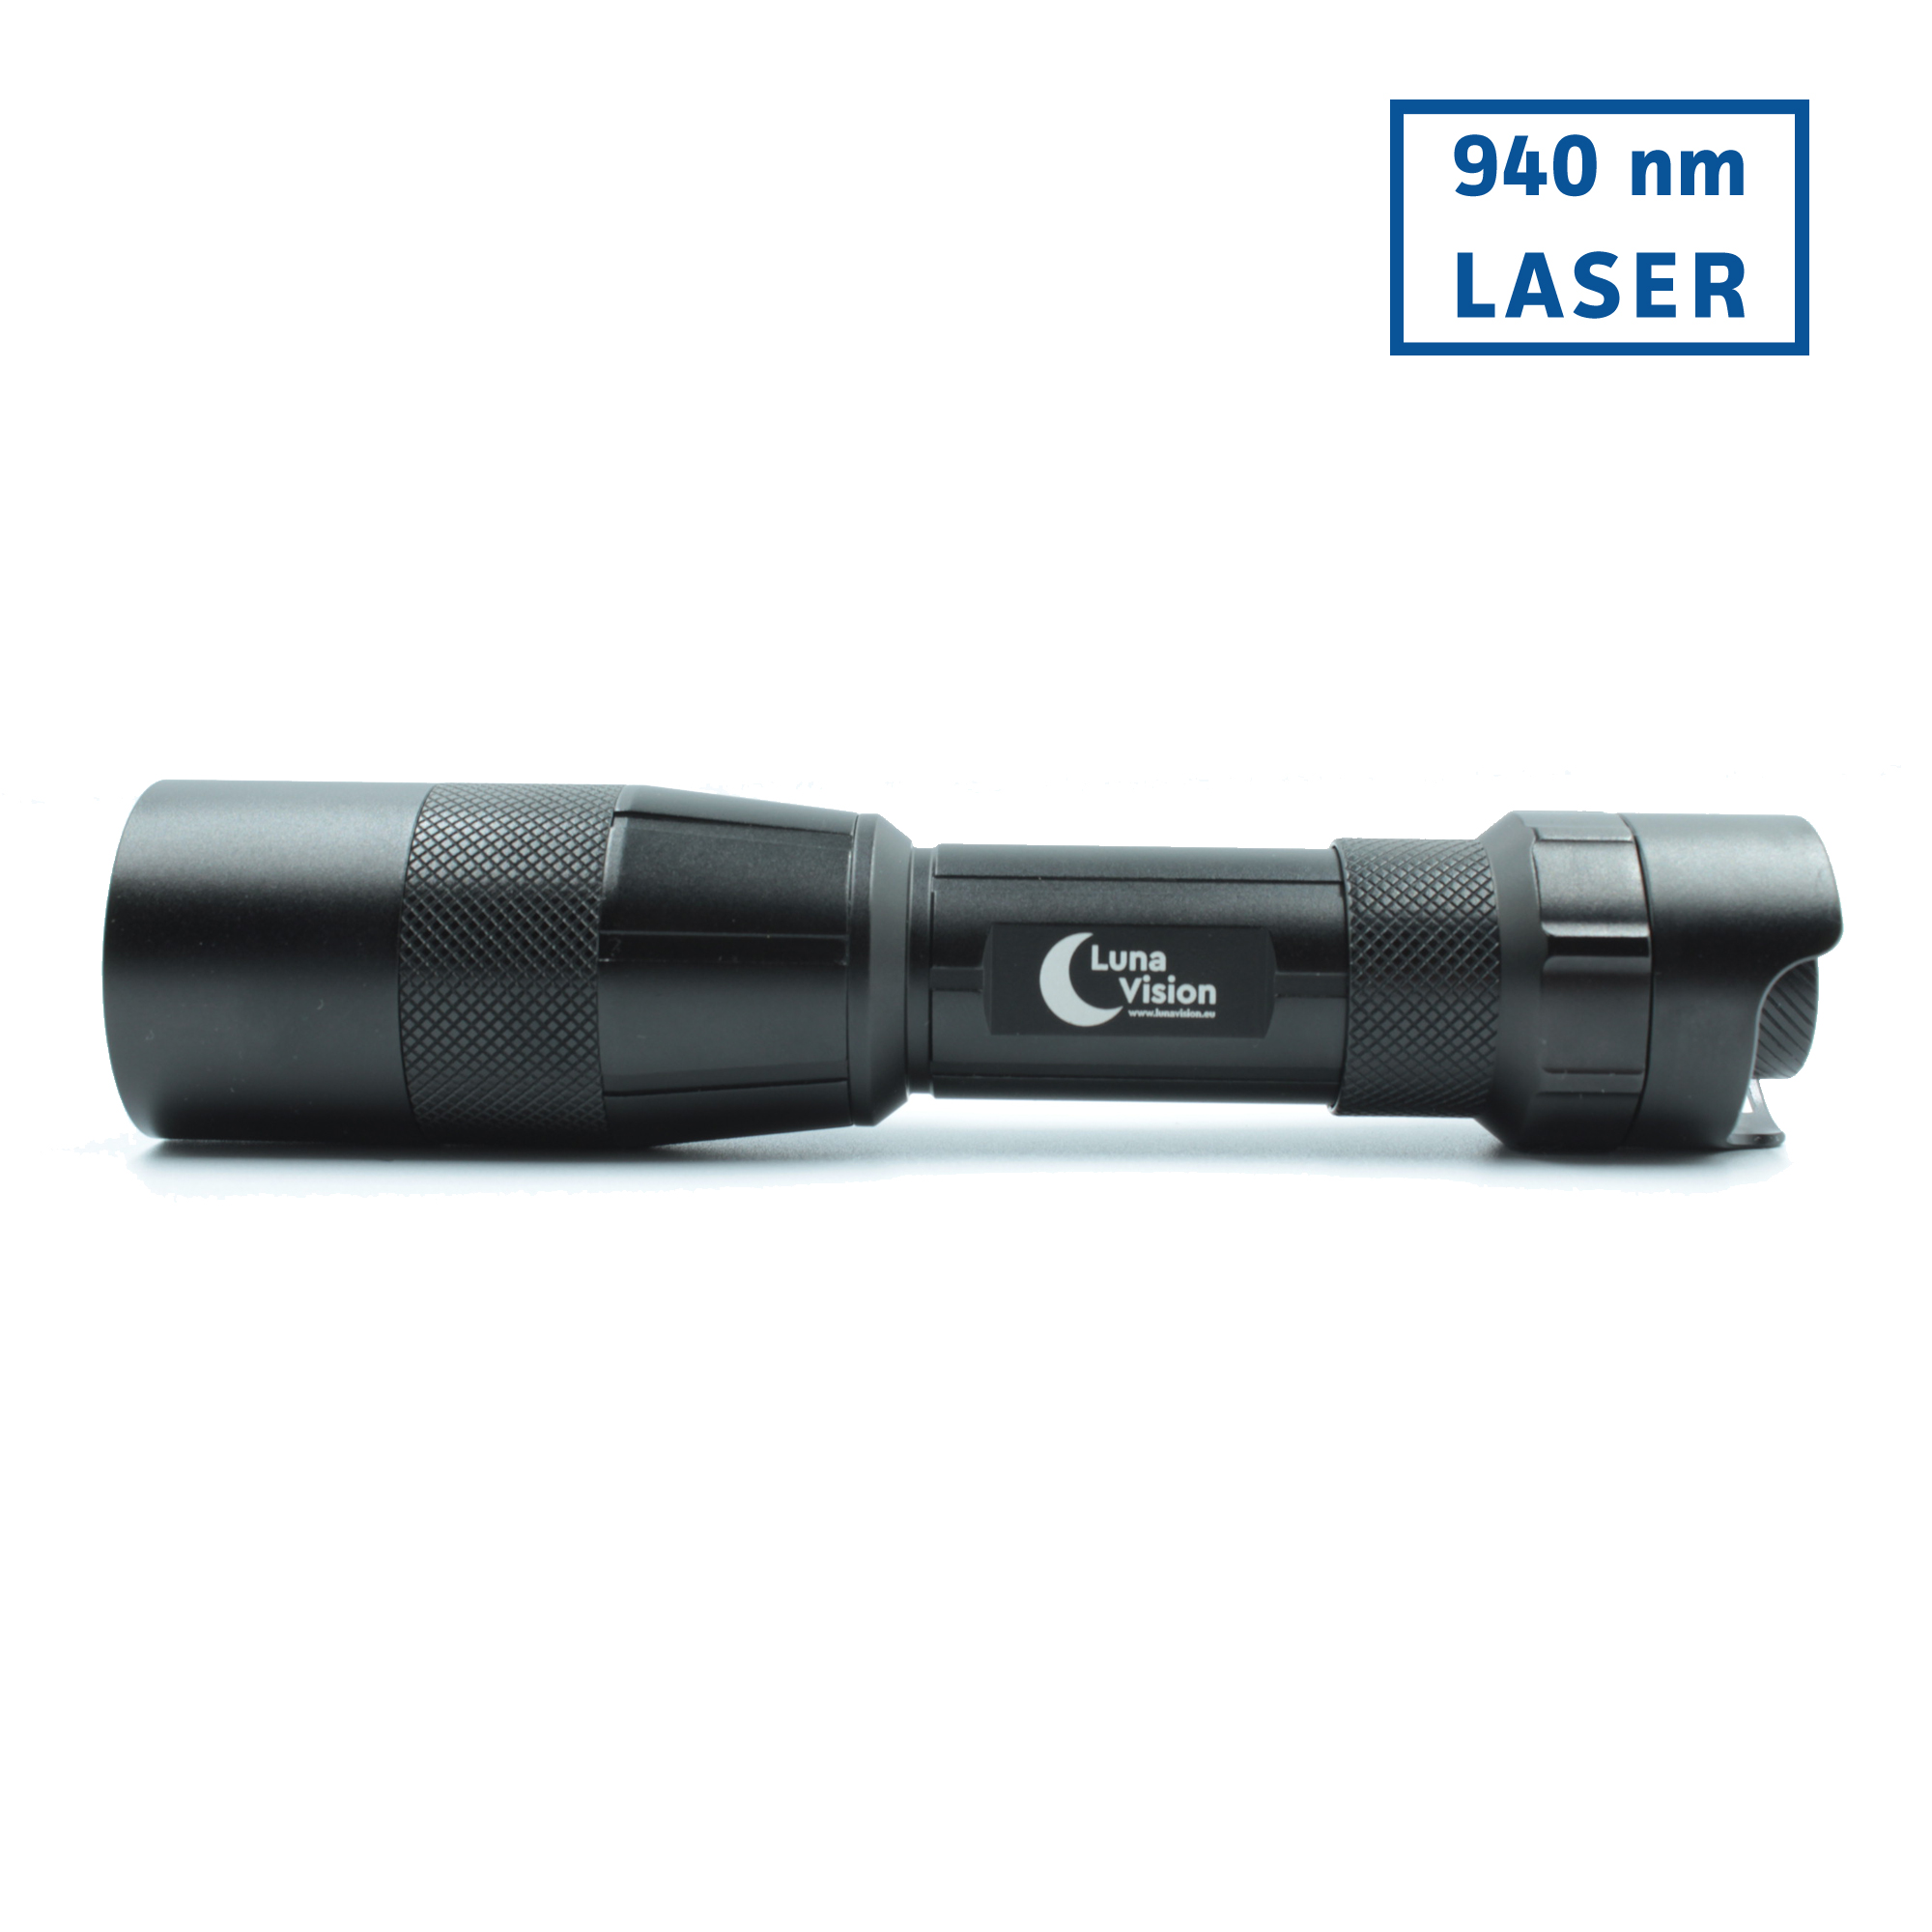 LunaVision-1-940-LASER